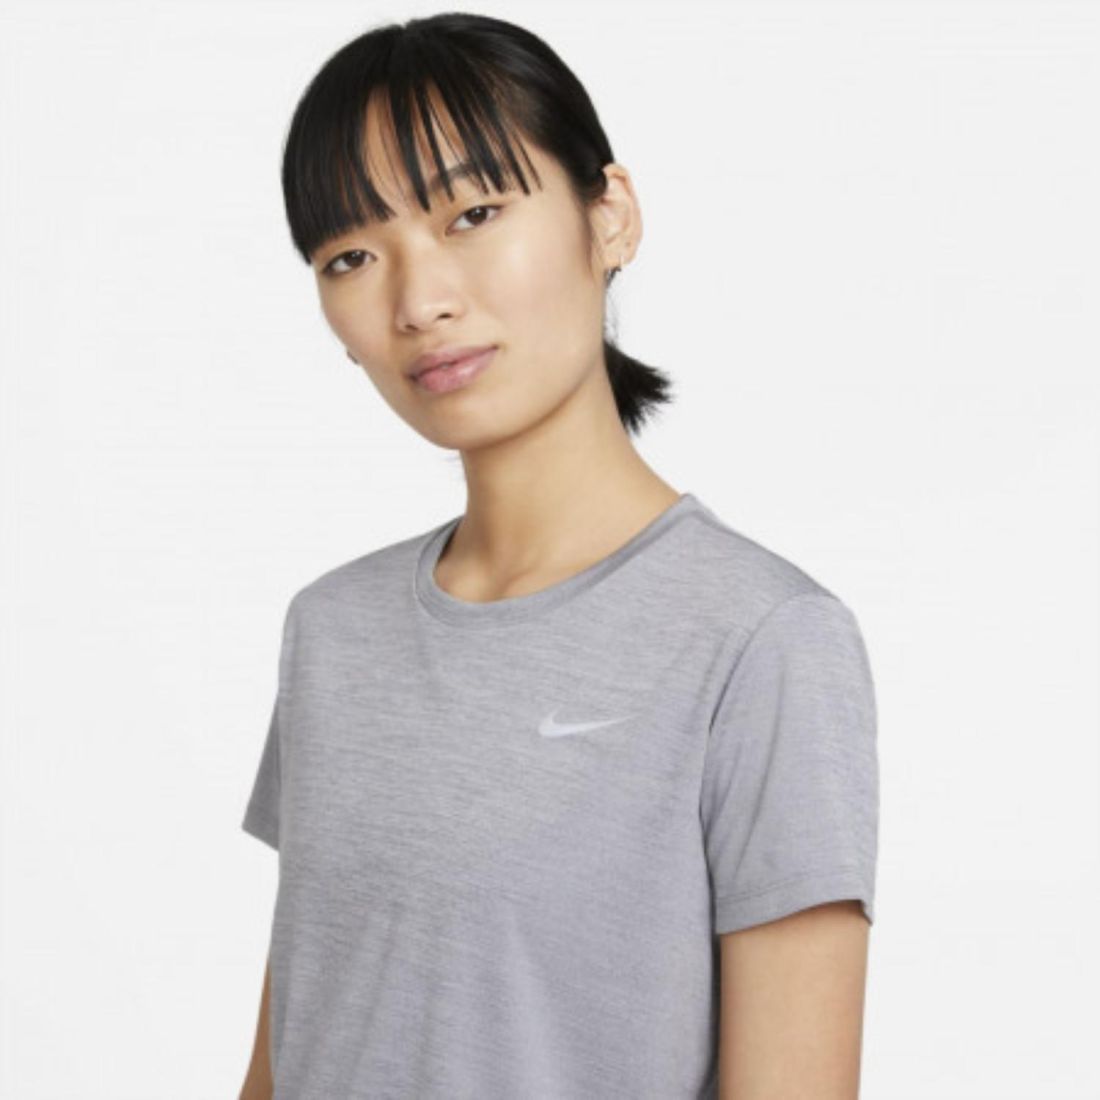 Стильная женская футболка Nike Miler